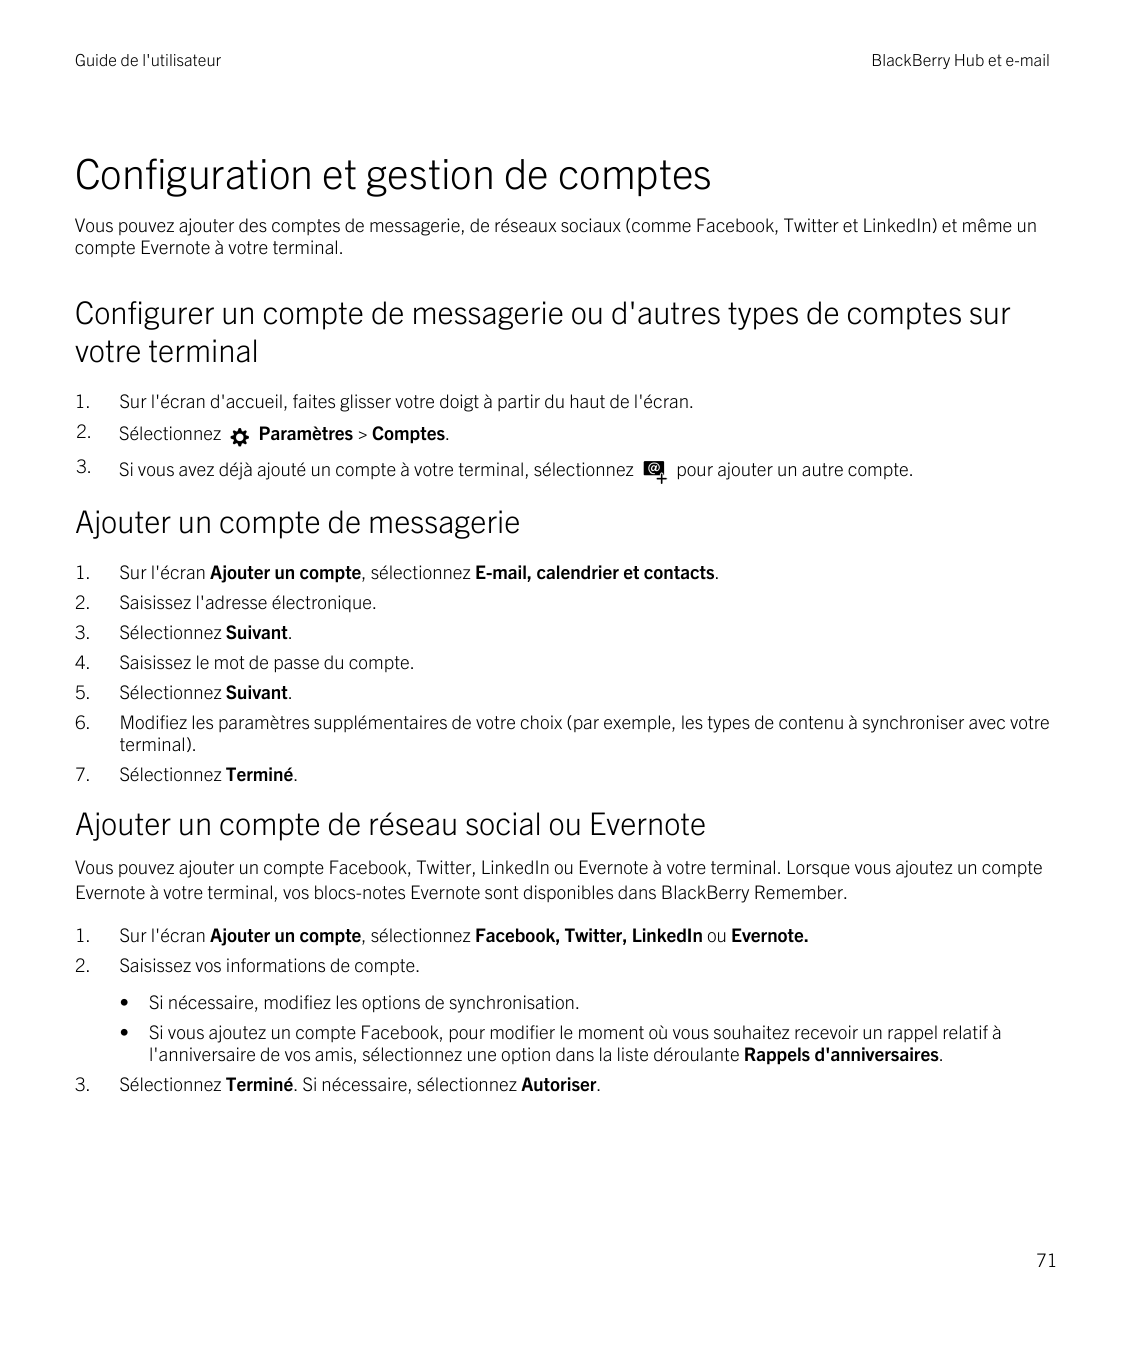 Guide de l'utilisateurBlackBerry Hub et e-mailConfiguration et gestion de comptesVous pouvez ajouter des comptes de messagerie, 